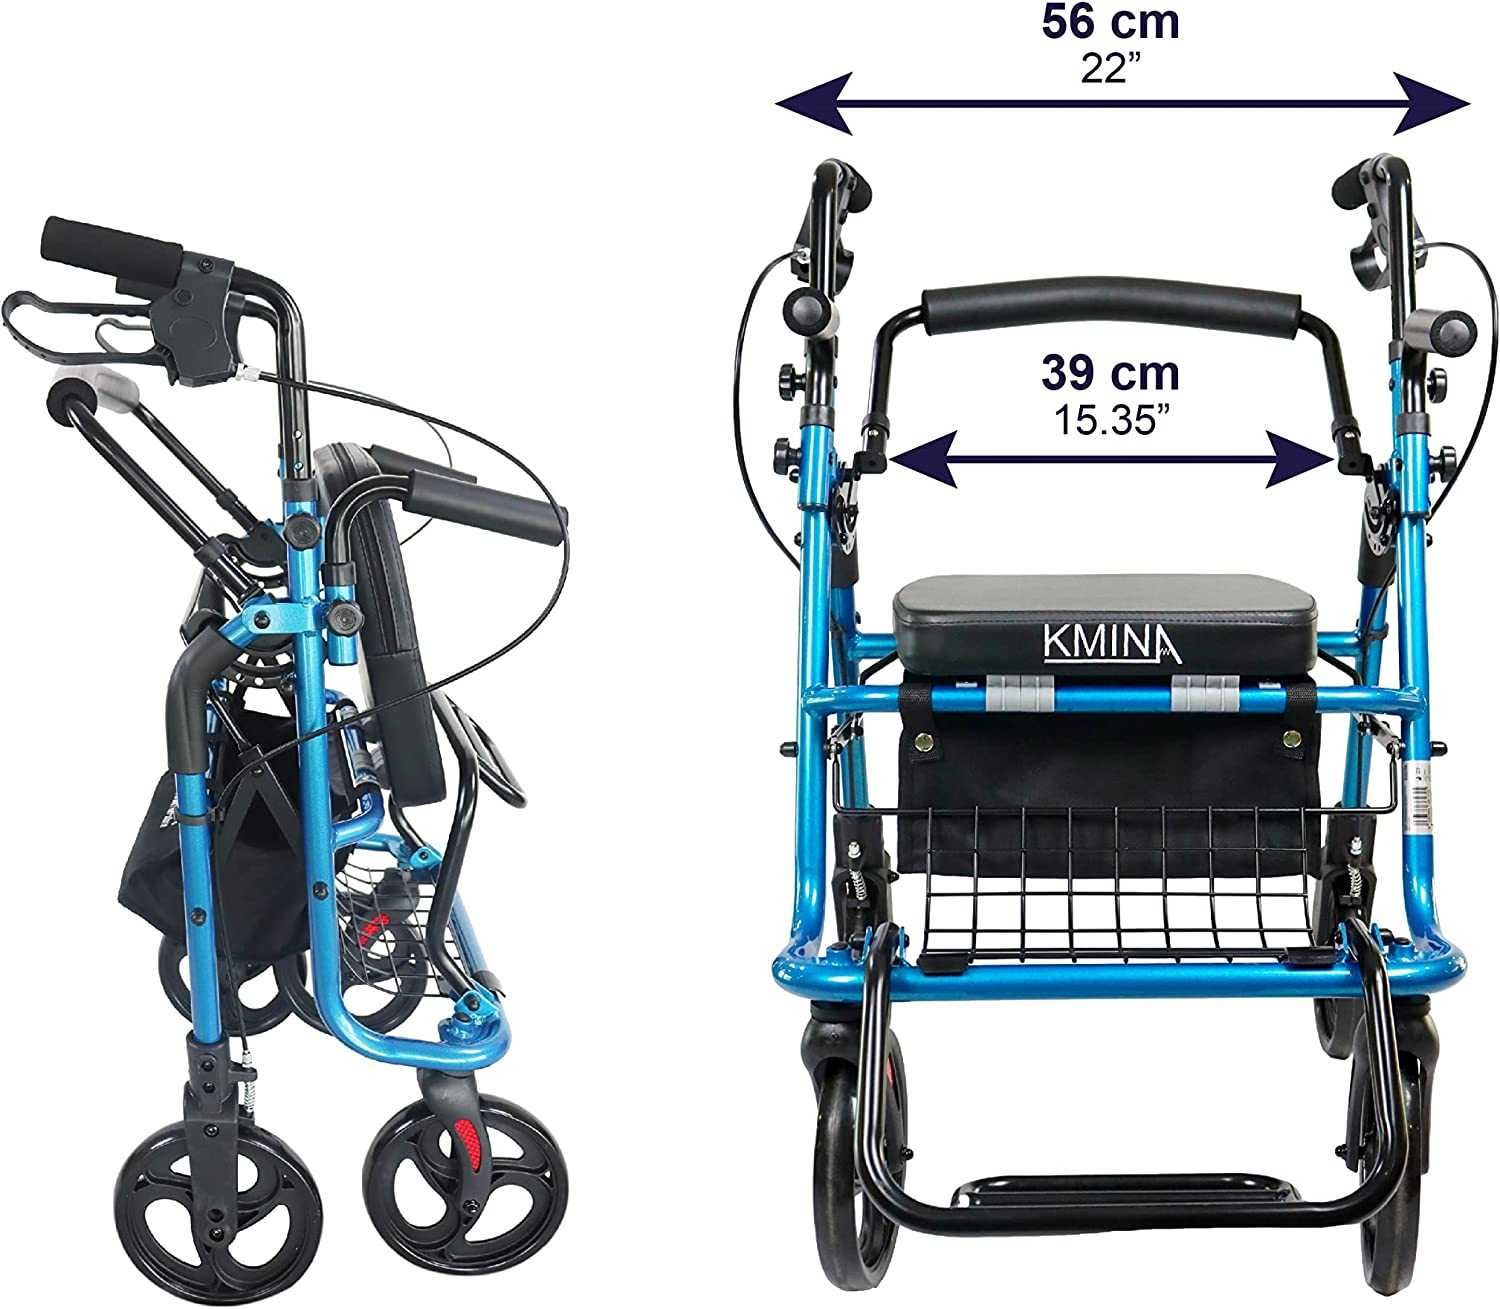 Chodzik czterokołowy podpórka wózek inwalidzki 2w1